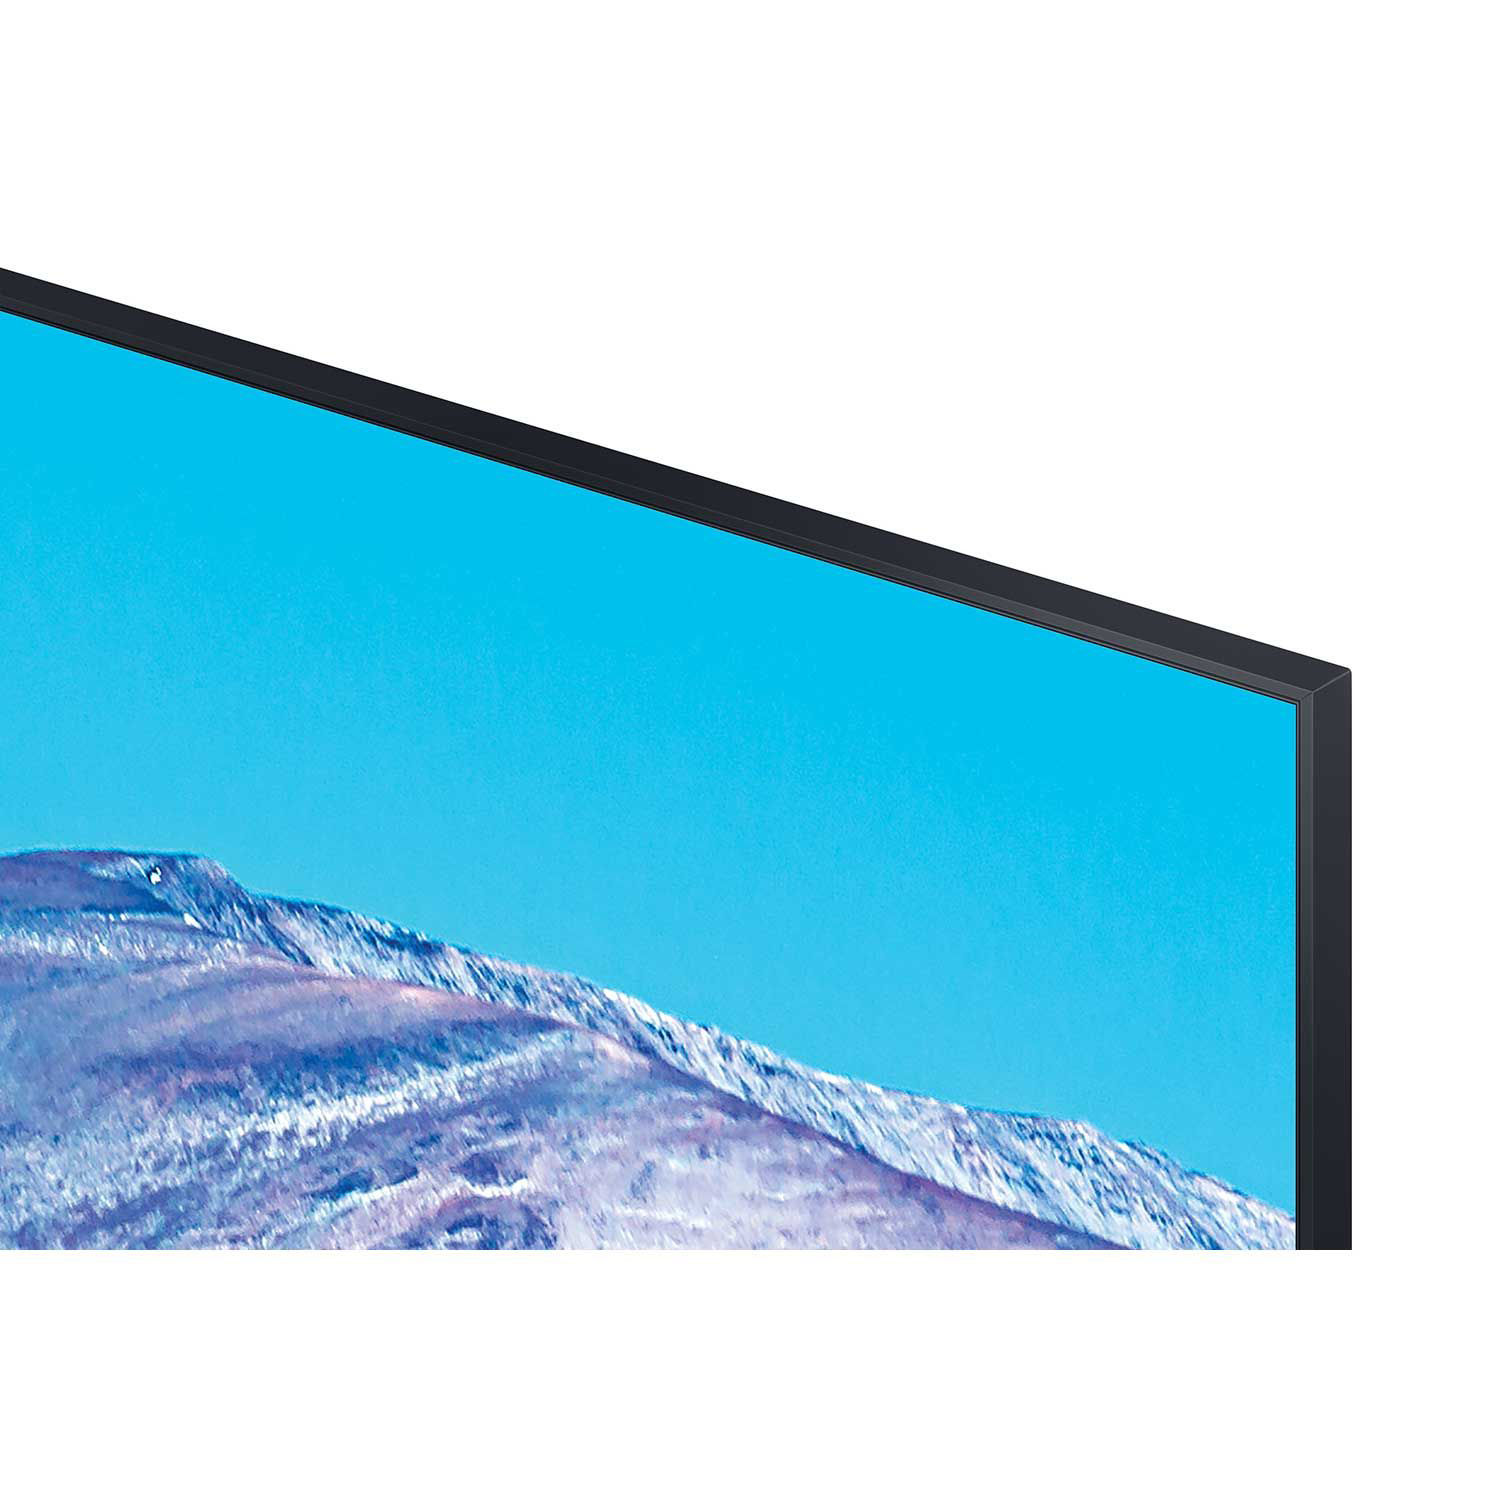 SAMSUNG Pantalla Class Crystal de 75 pulgadas UHD Serie TU-8000 - TV  inteligente HDR 4K UHD con Alexa integrada (UN75TU8000FXZA 2020)